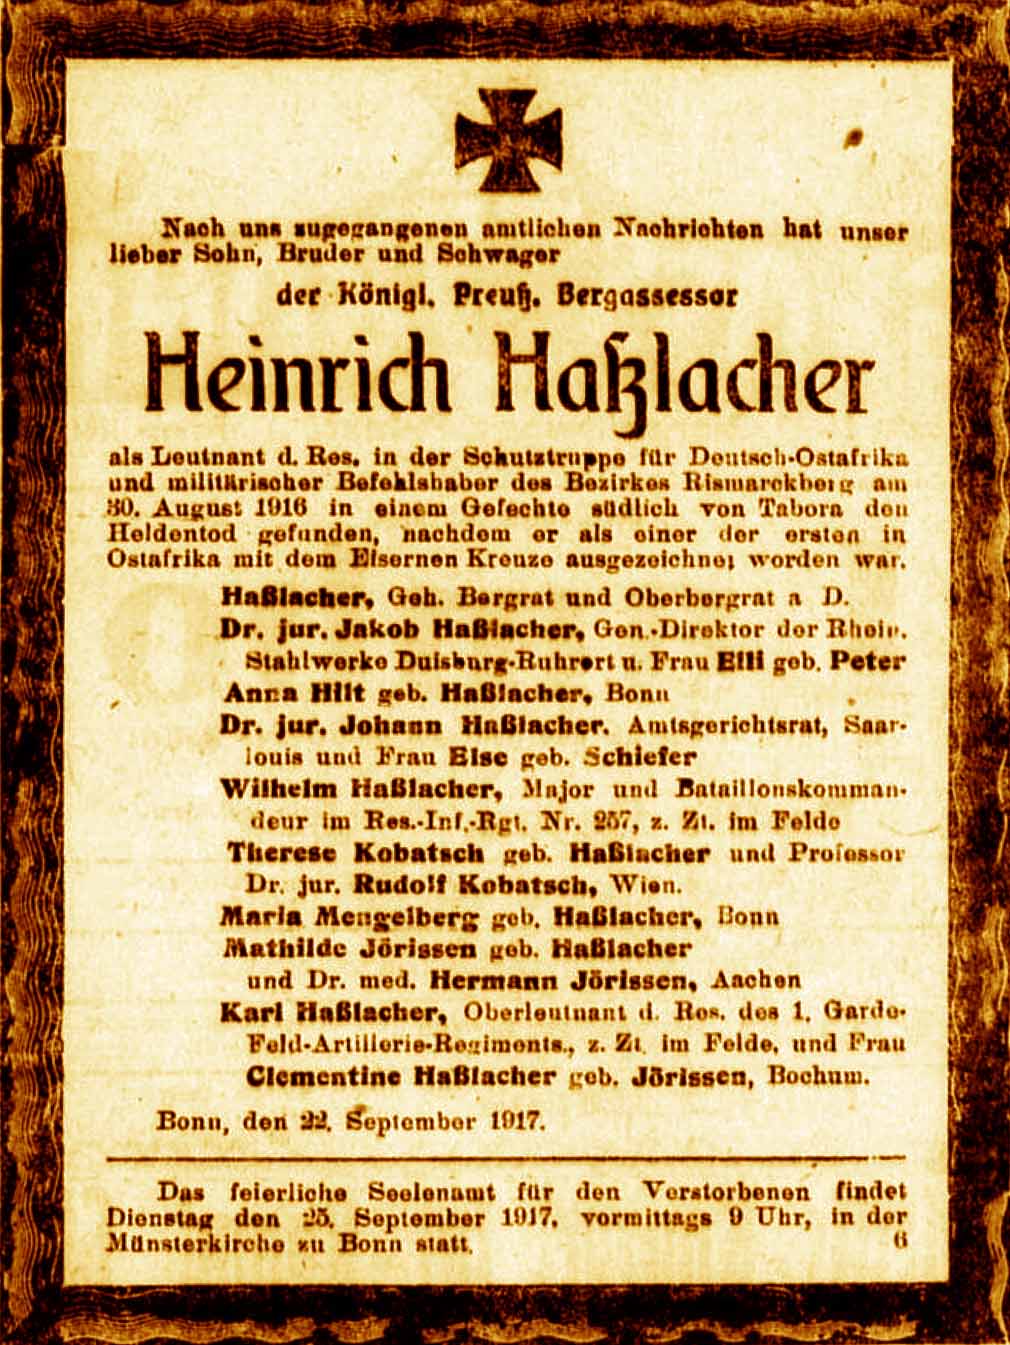 Anzeige im General-Anzeiger vom 22. September 1917